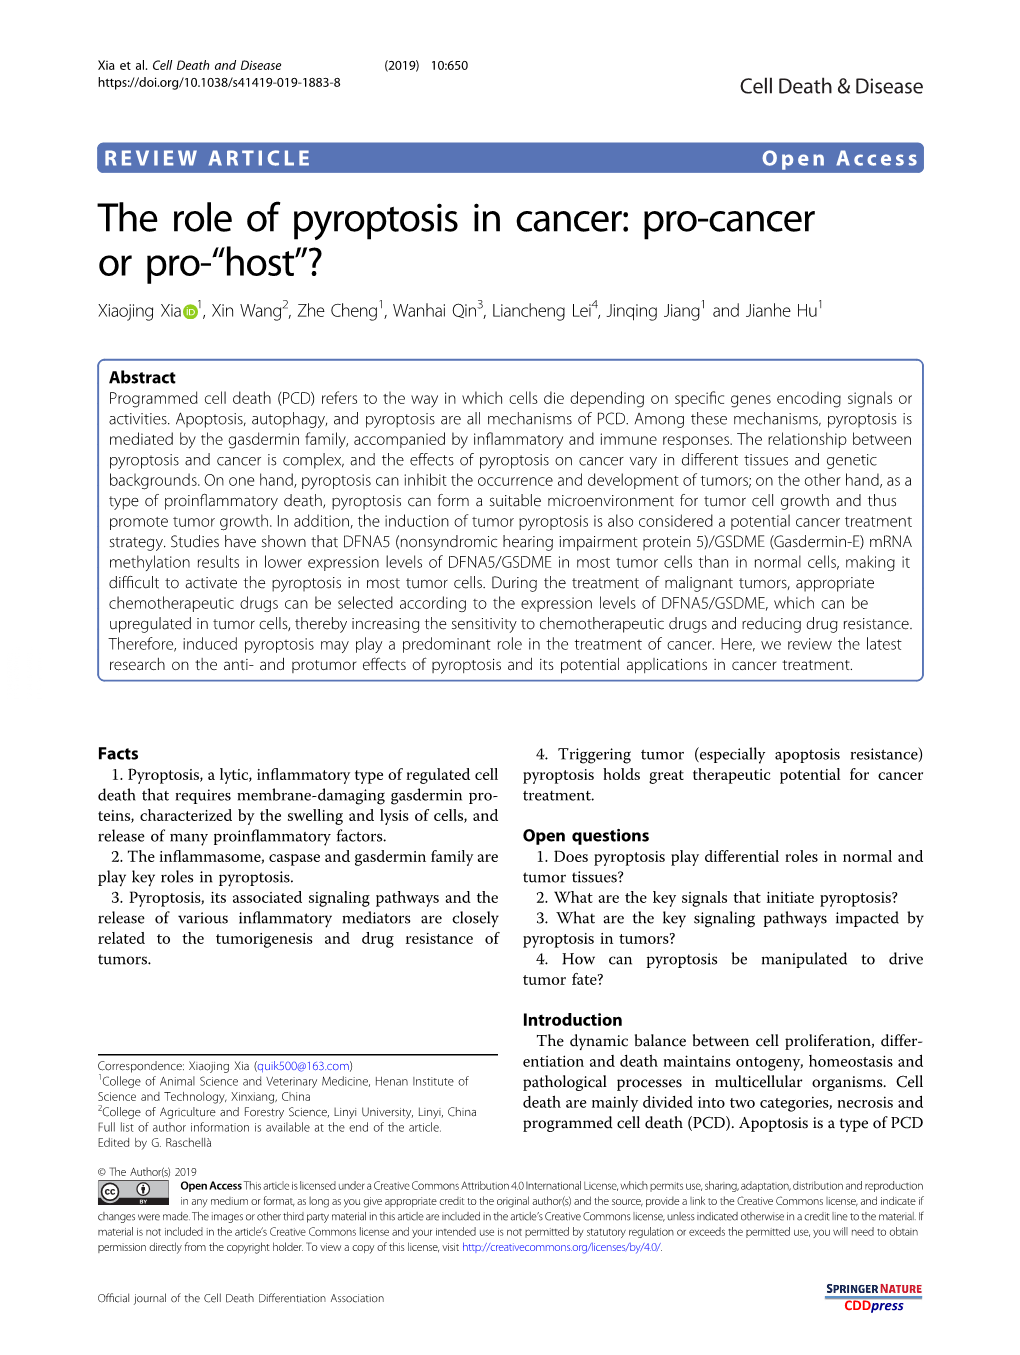 The Role of Pyroptosis in Cancer: Pro-Cancer Or Pro-“Host”? Xiaojing Xia 1,Xinwang2, Zhe Cheng1,Wanhaiqin3, Liancheng Lei4,Jinqingjiang1 and Jianhe Hu1